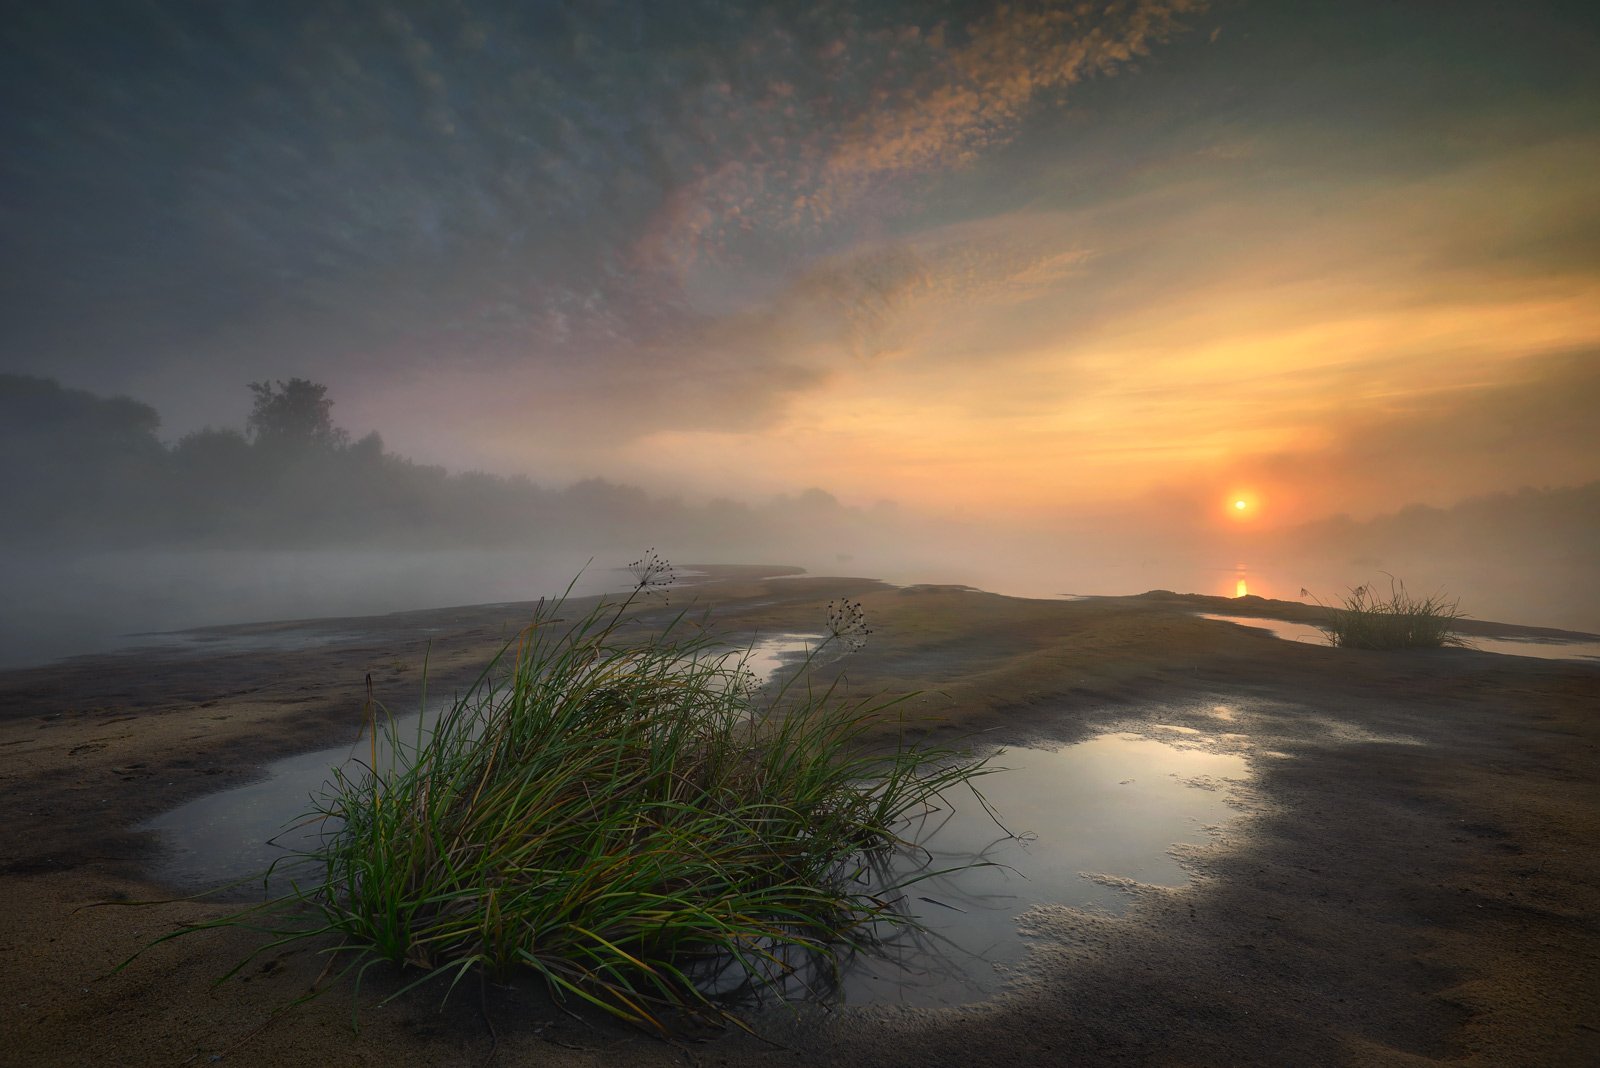 пейзаж утро туман речка вода солнце небо, Морозов Юрий